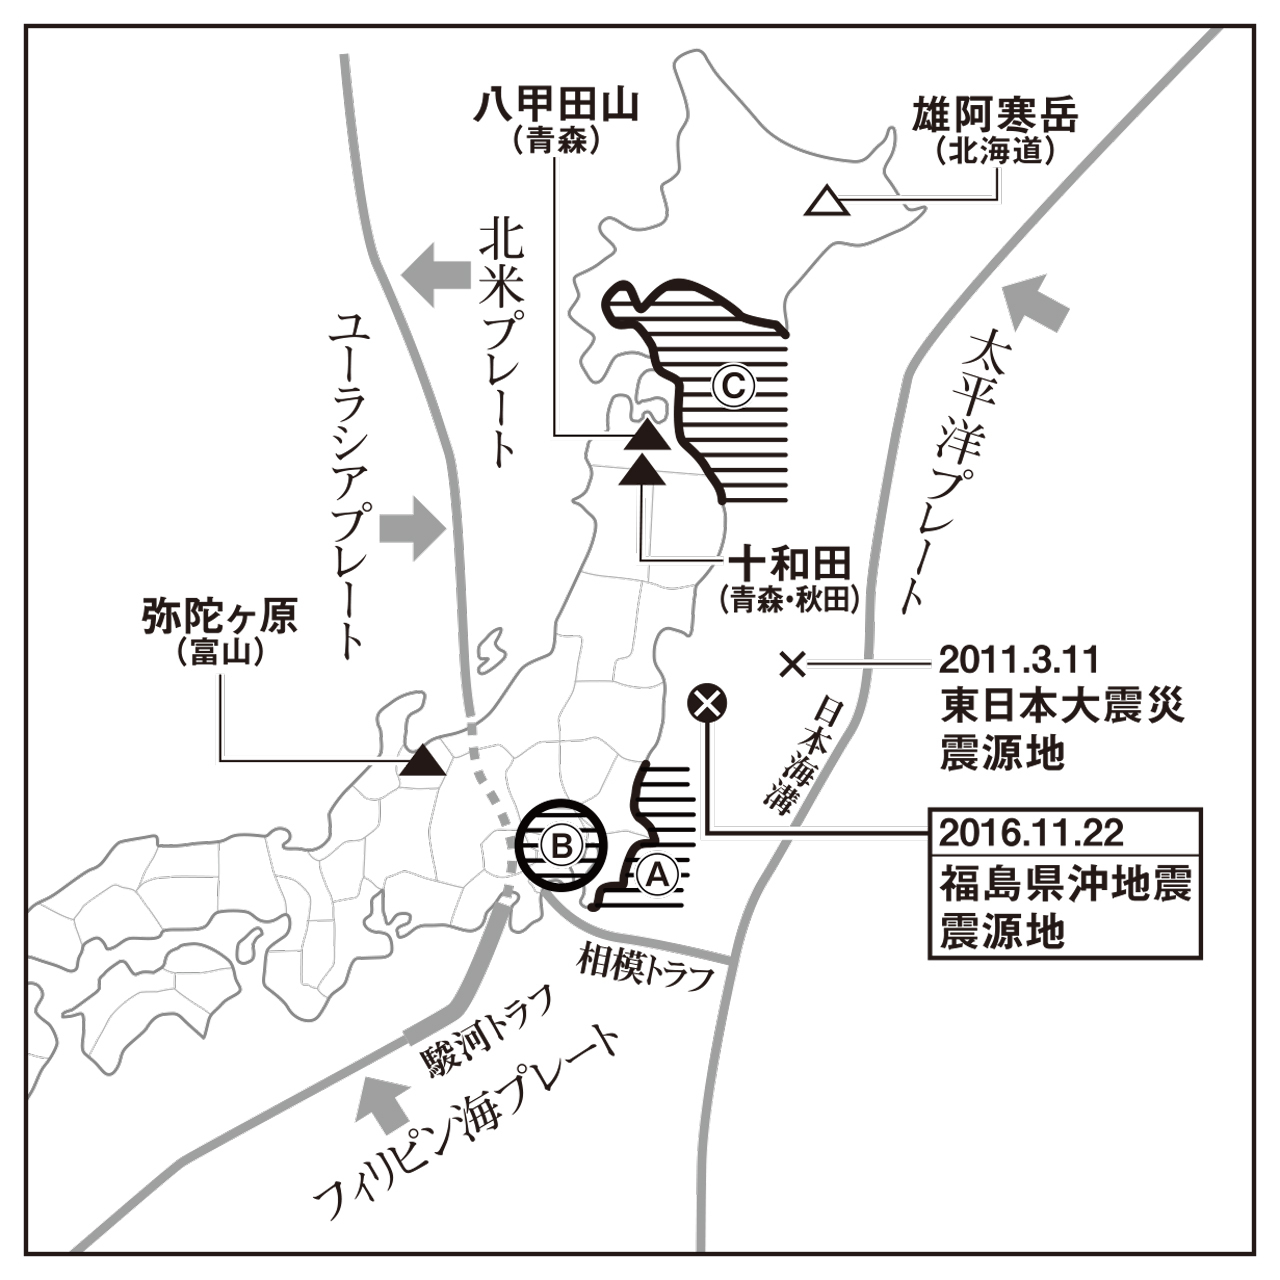 茨城、千葉両県の沖合 数カ月以内に大地震発生の可能性も